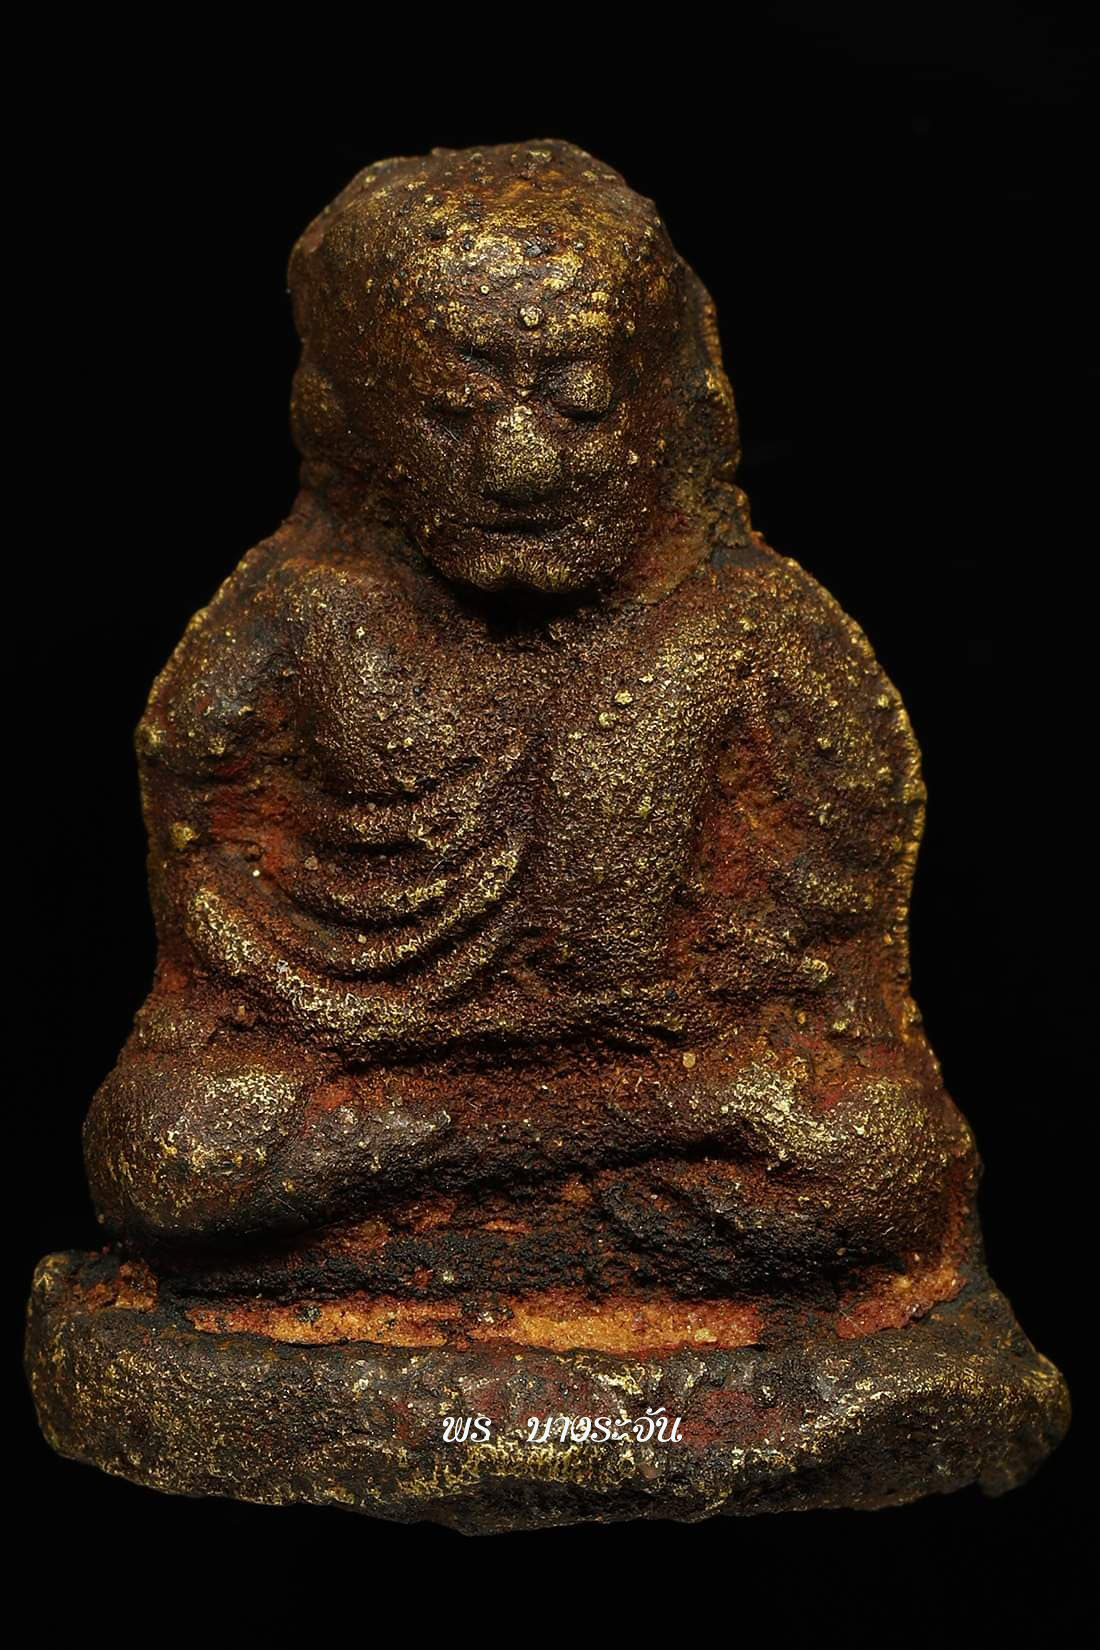 รูปหล่อหลวงพ่อเงินบางคลาน พิมพ์ขี้ตา phra lp ngern statue wat bangklan antique talisman old thai buddha amulet 銮菩银 财佛, 鑾菩銀 大師